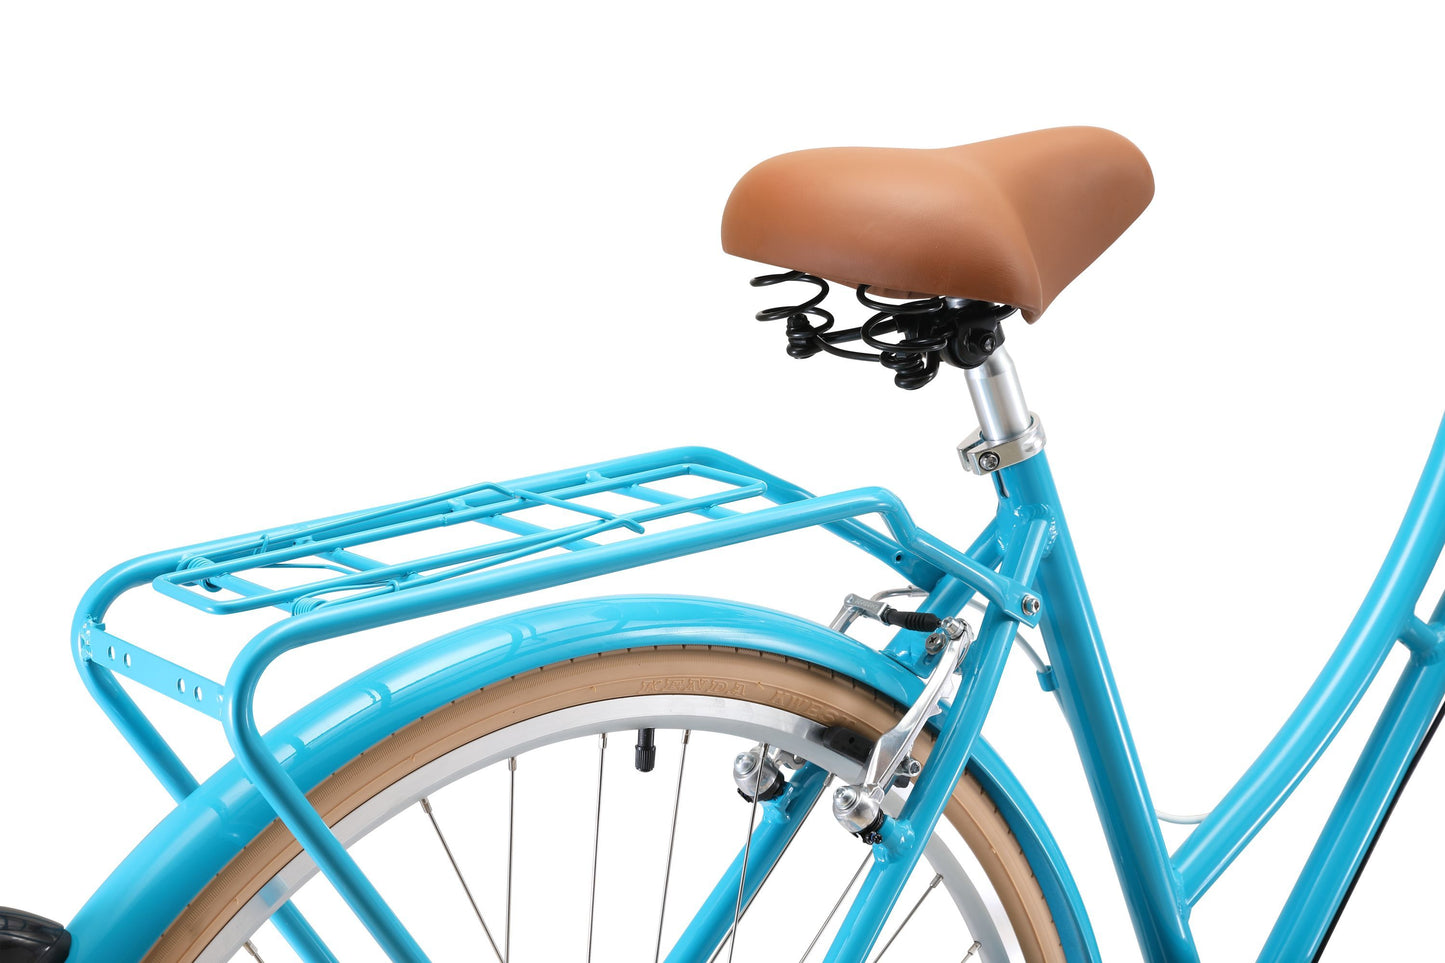 Ladies Deluxe Vintage Bike in Aqua featuring rear pannier rack from Reid Cycles Australia